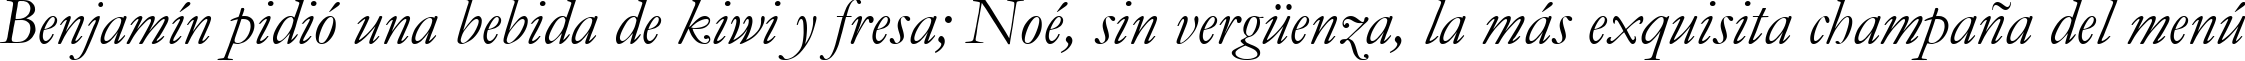 Пример написания шрифтом font254 текста на испанском